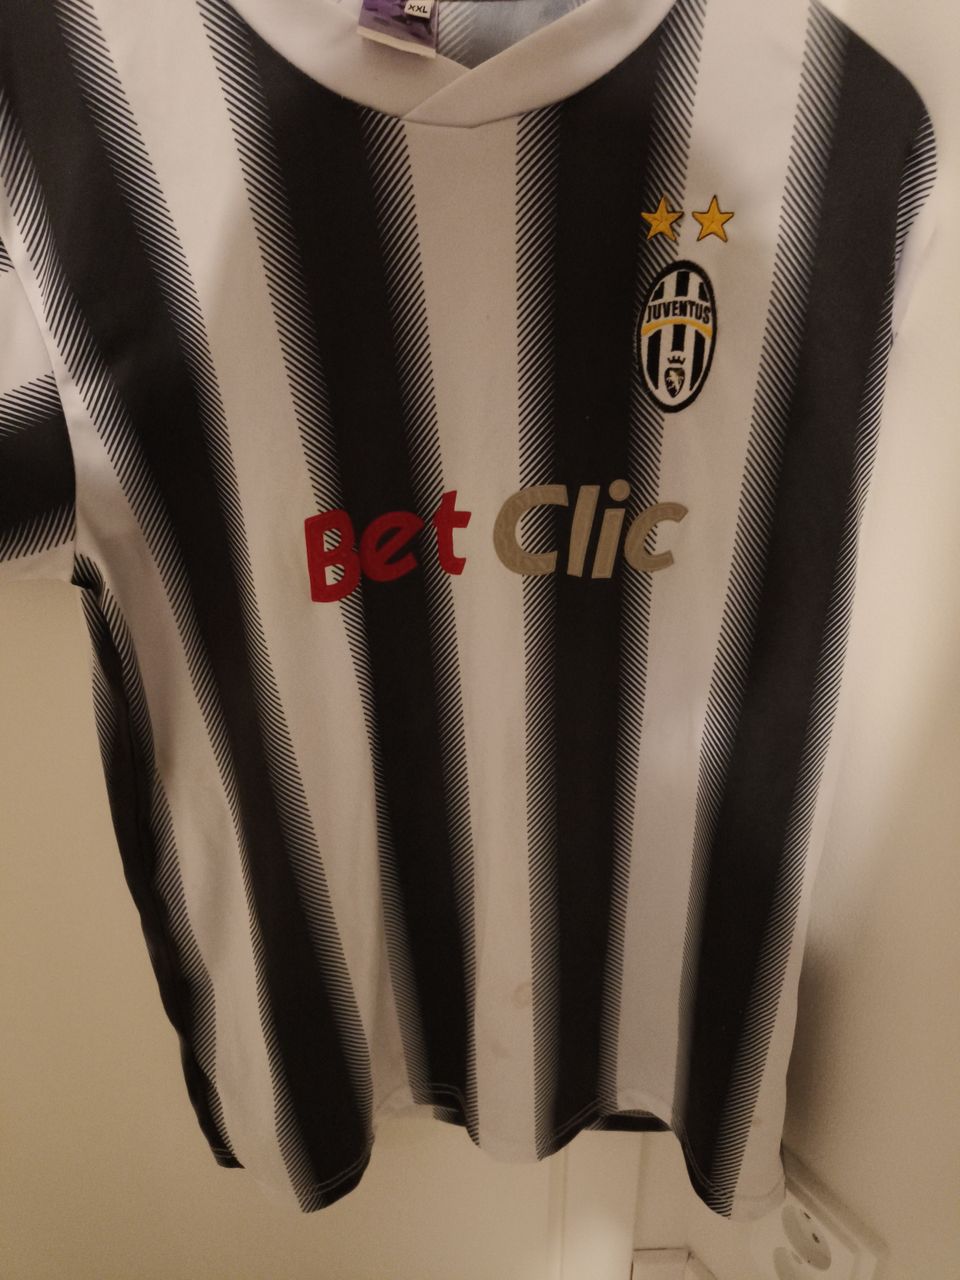 Del Piero Juventus kotipaita koko M/L